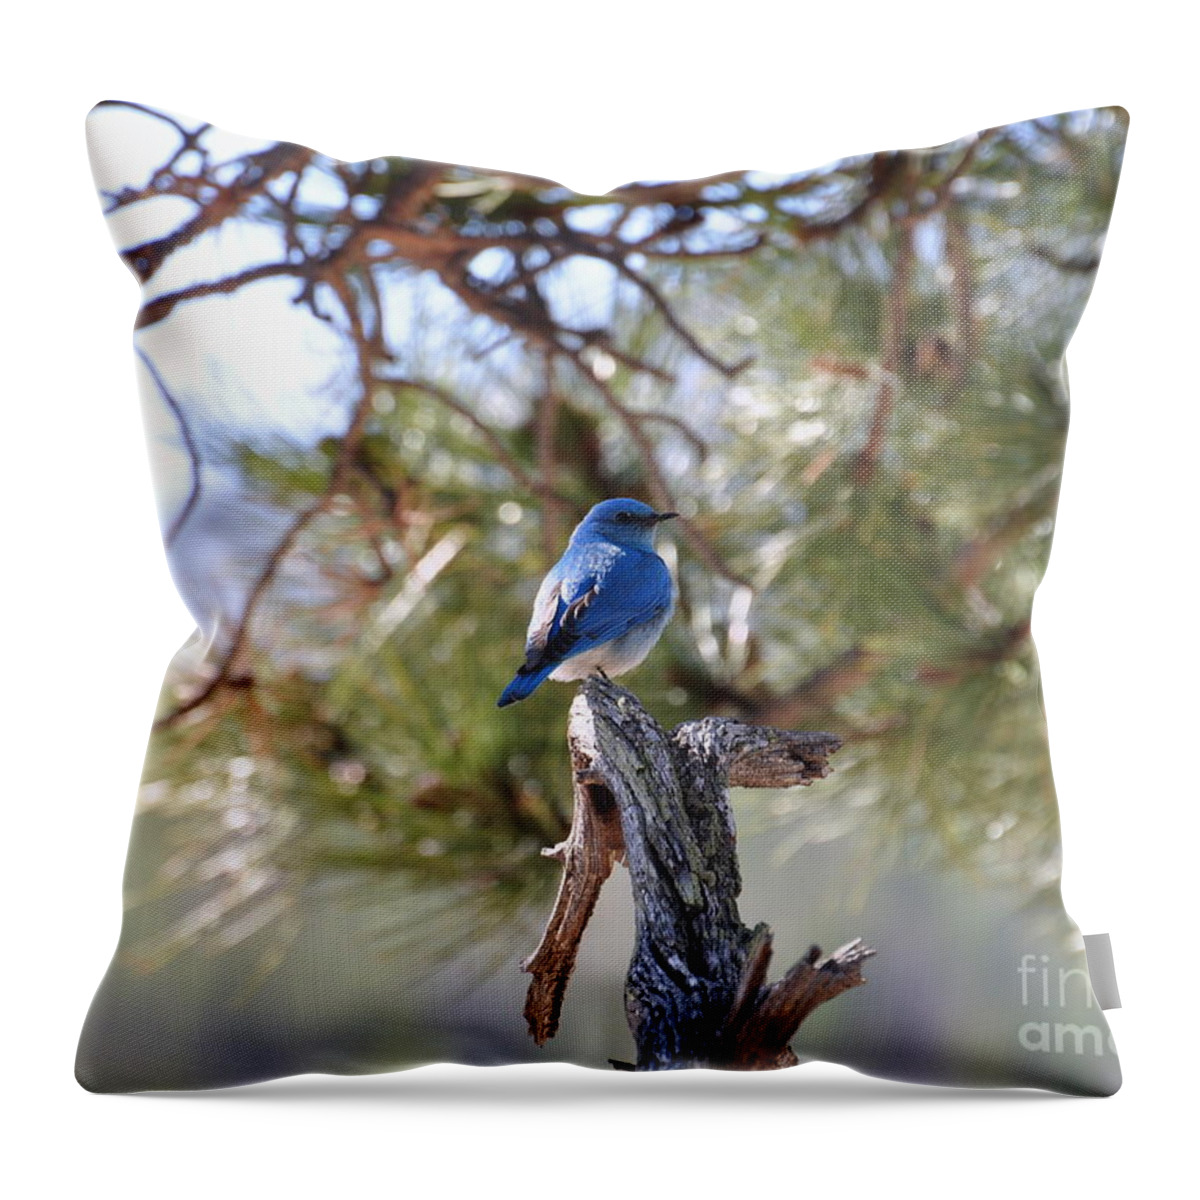 Birds Throw Pillow featuring the photograph Blue Boy by Dorrene BrownButterfield